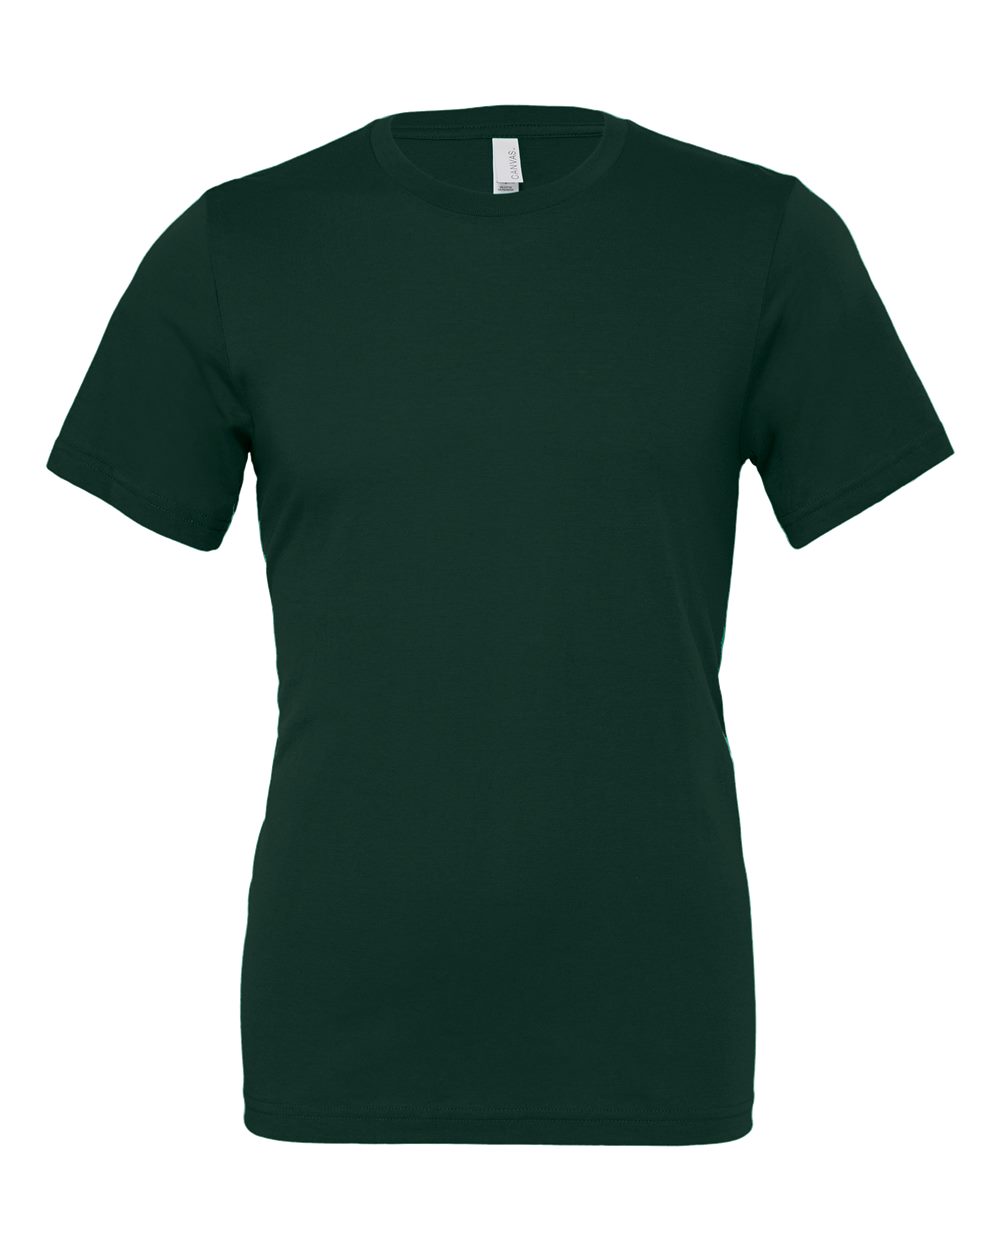 Bella+Canvas Jersey T-Shirt - Original